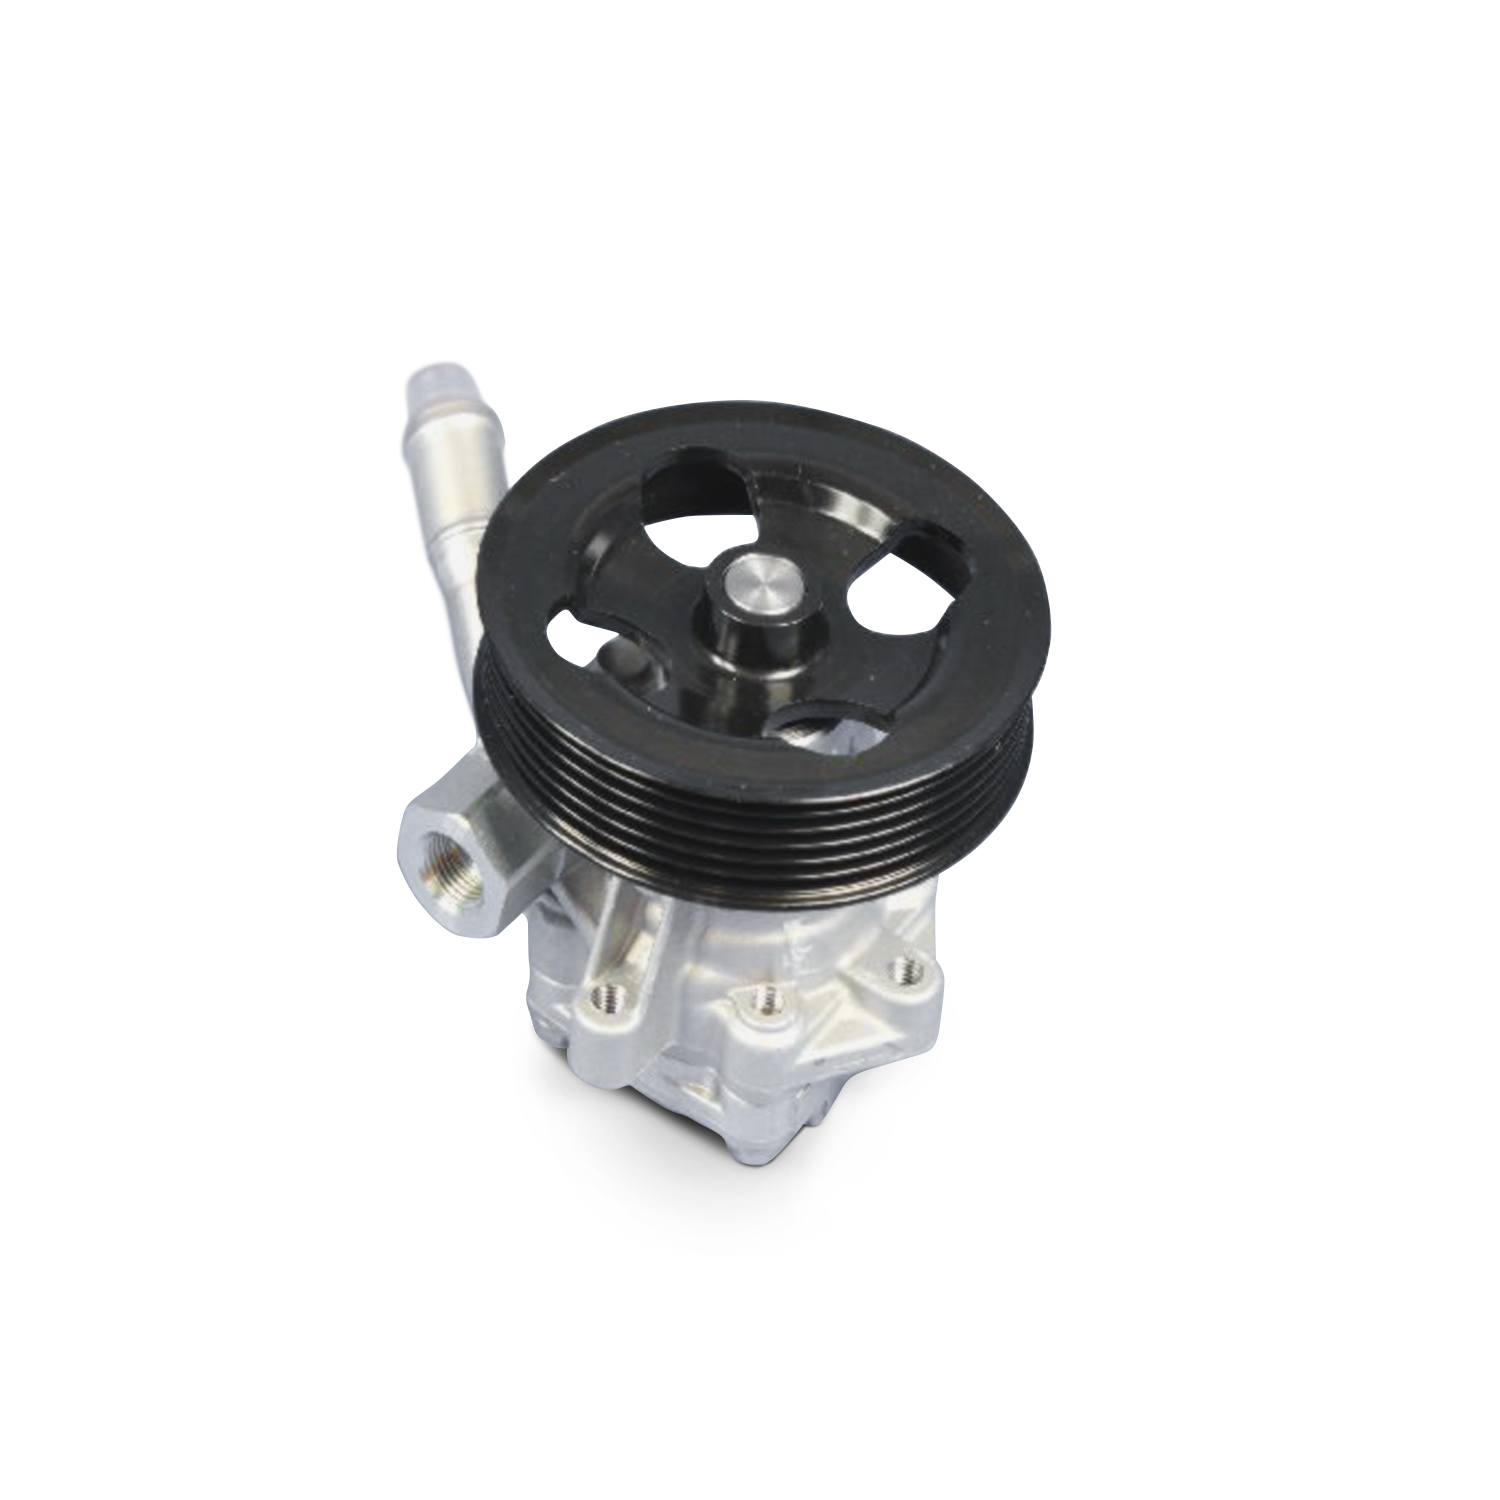 MOPAR PARTS - Power Steering Pump Complete Kit - MOP 05154400AC